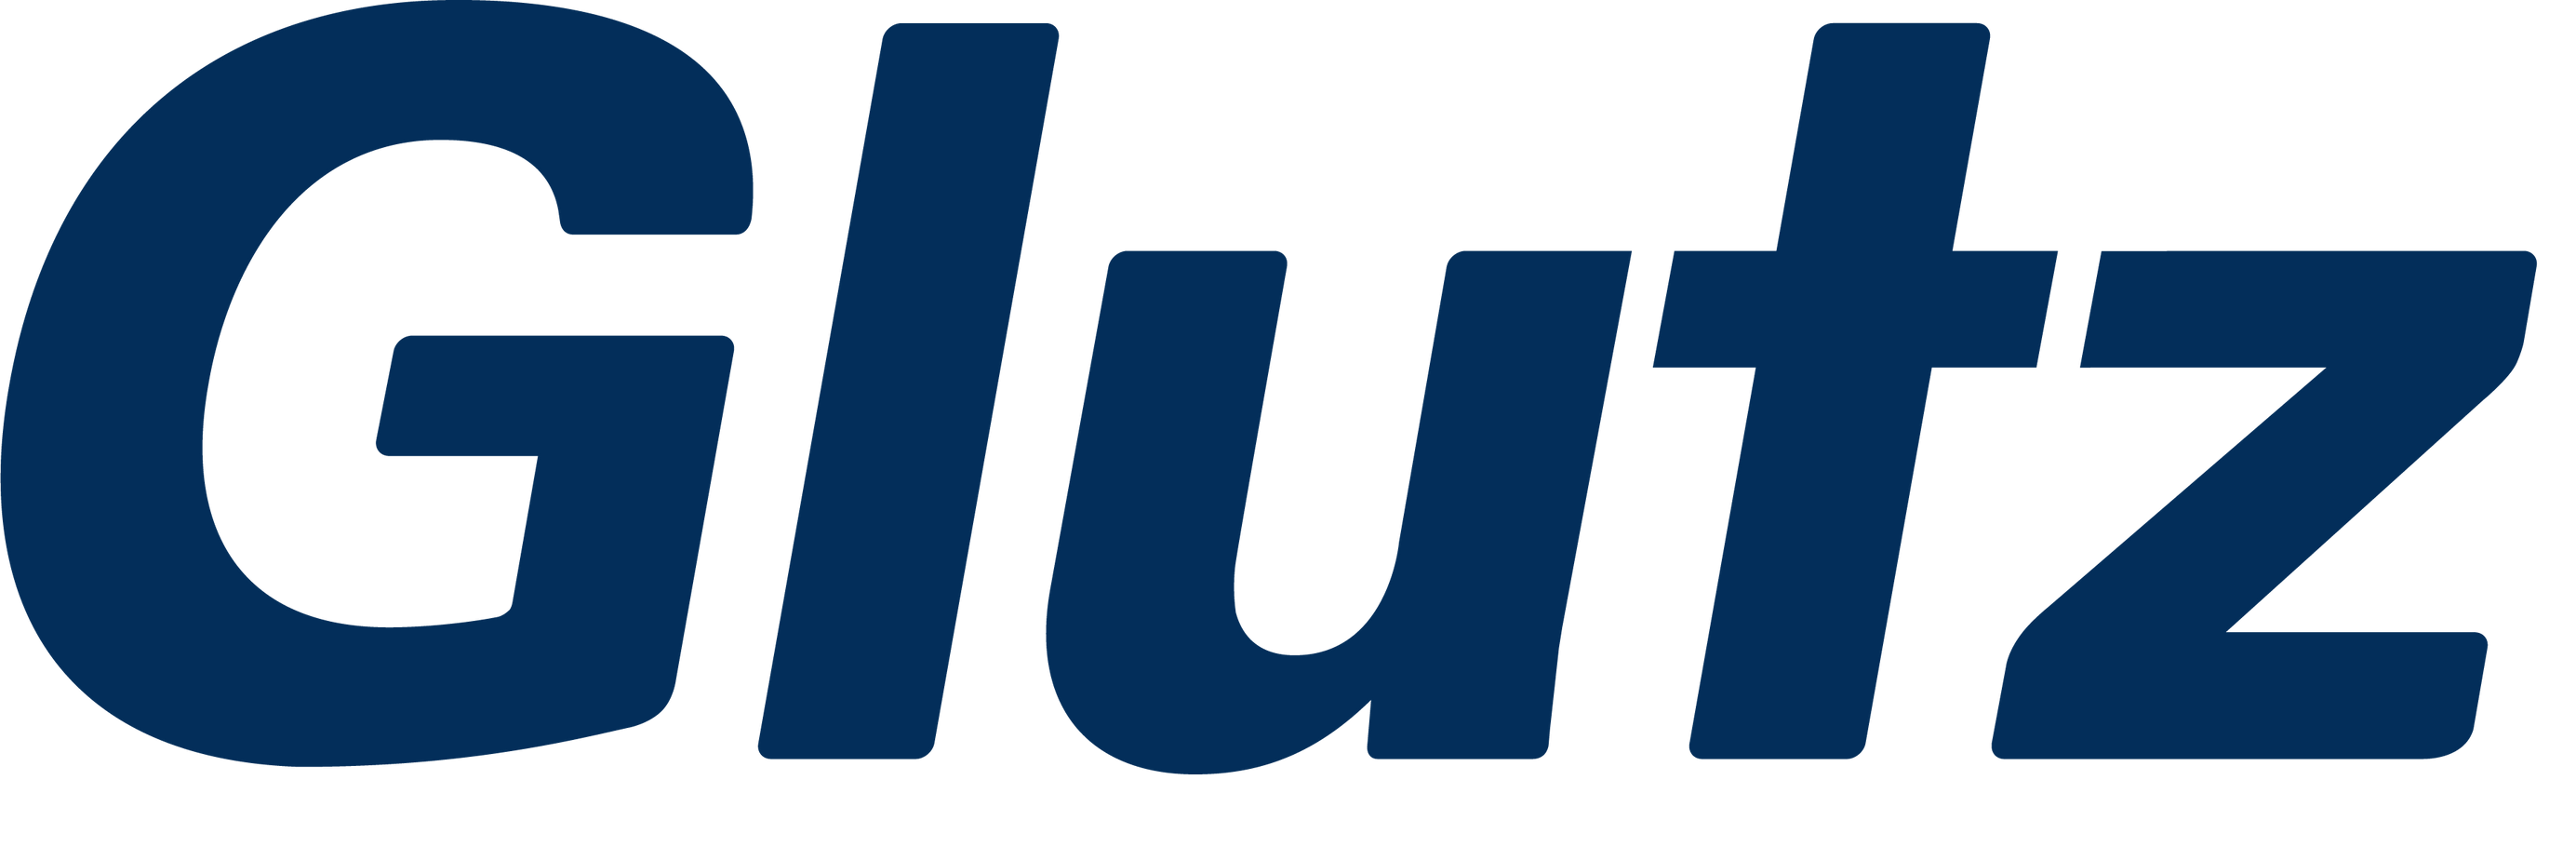 Glutz eAccess-logo